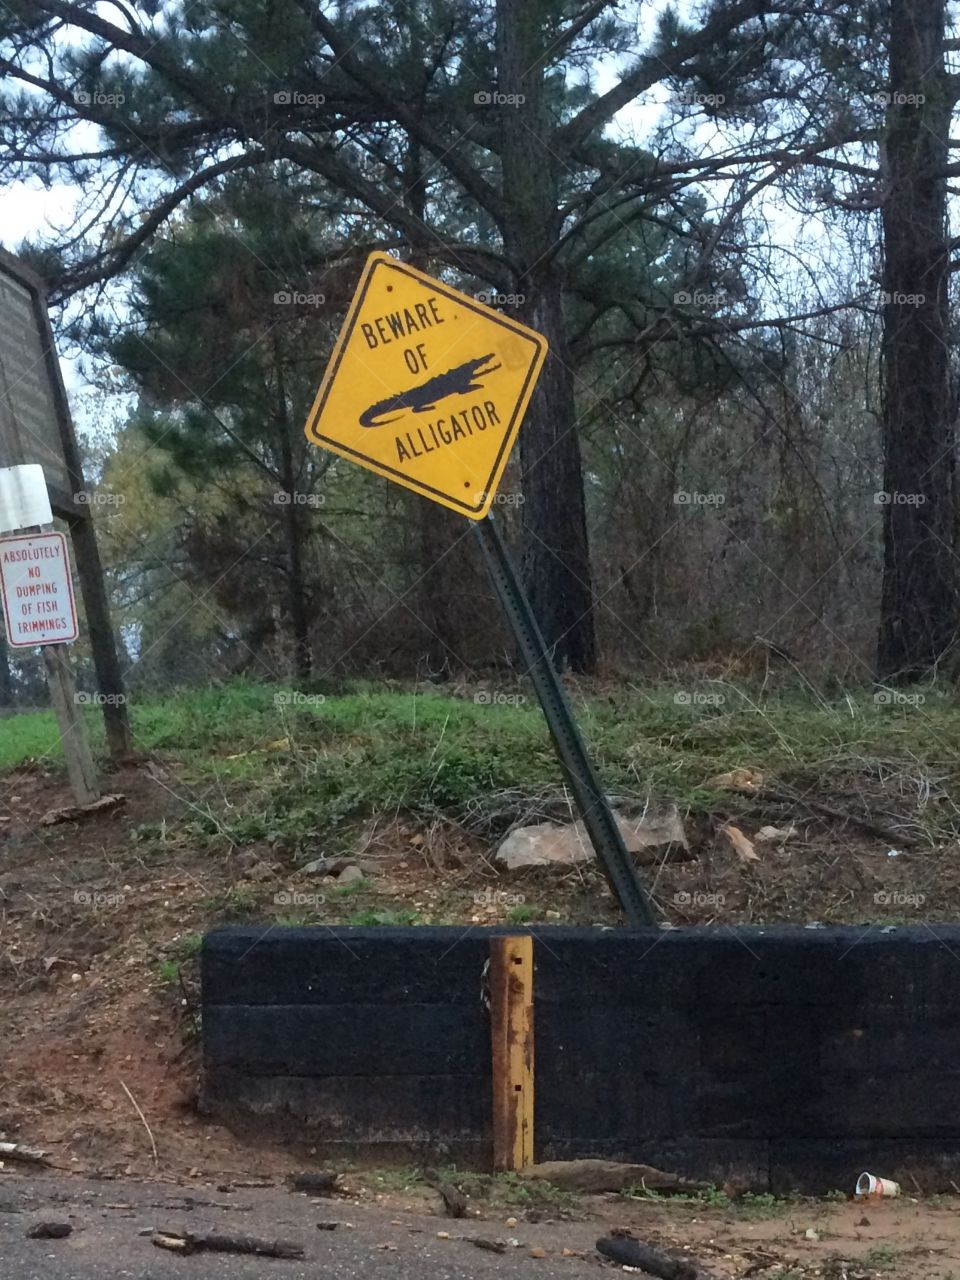 Arkansas lake sign